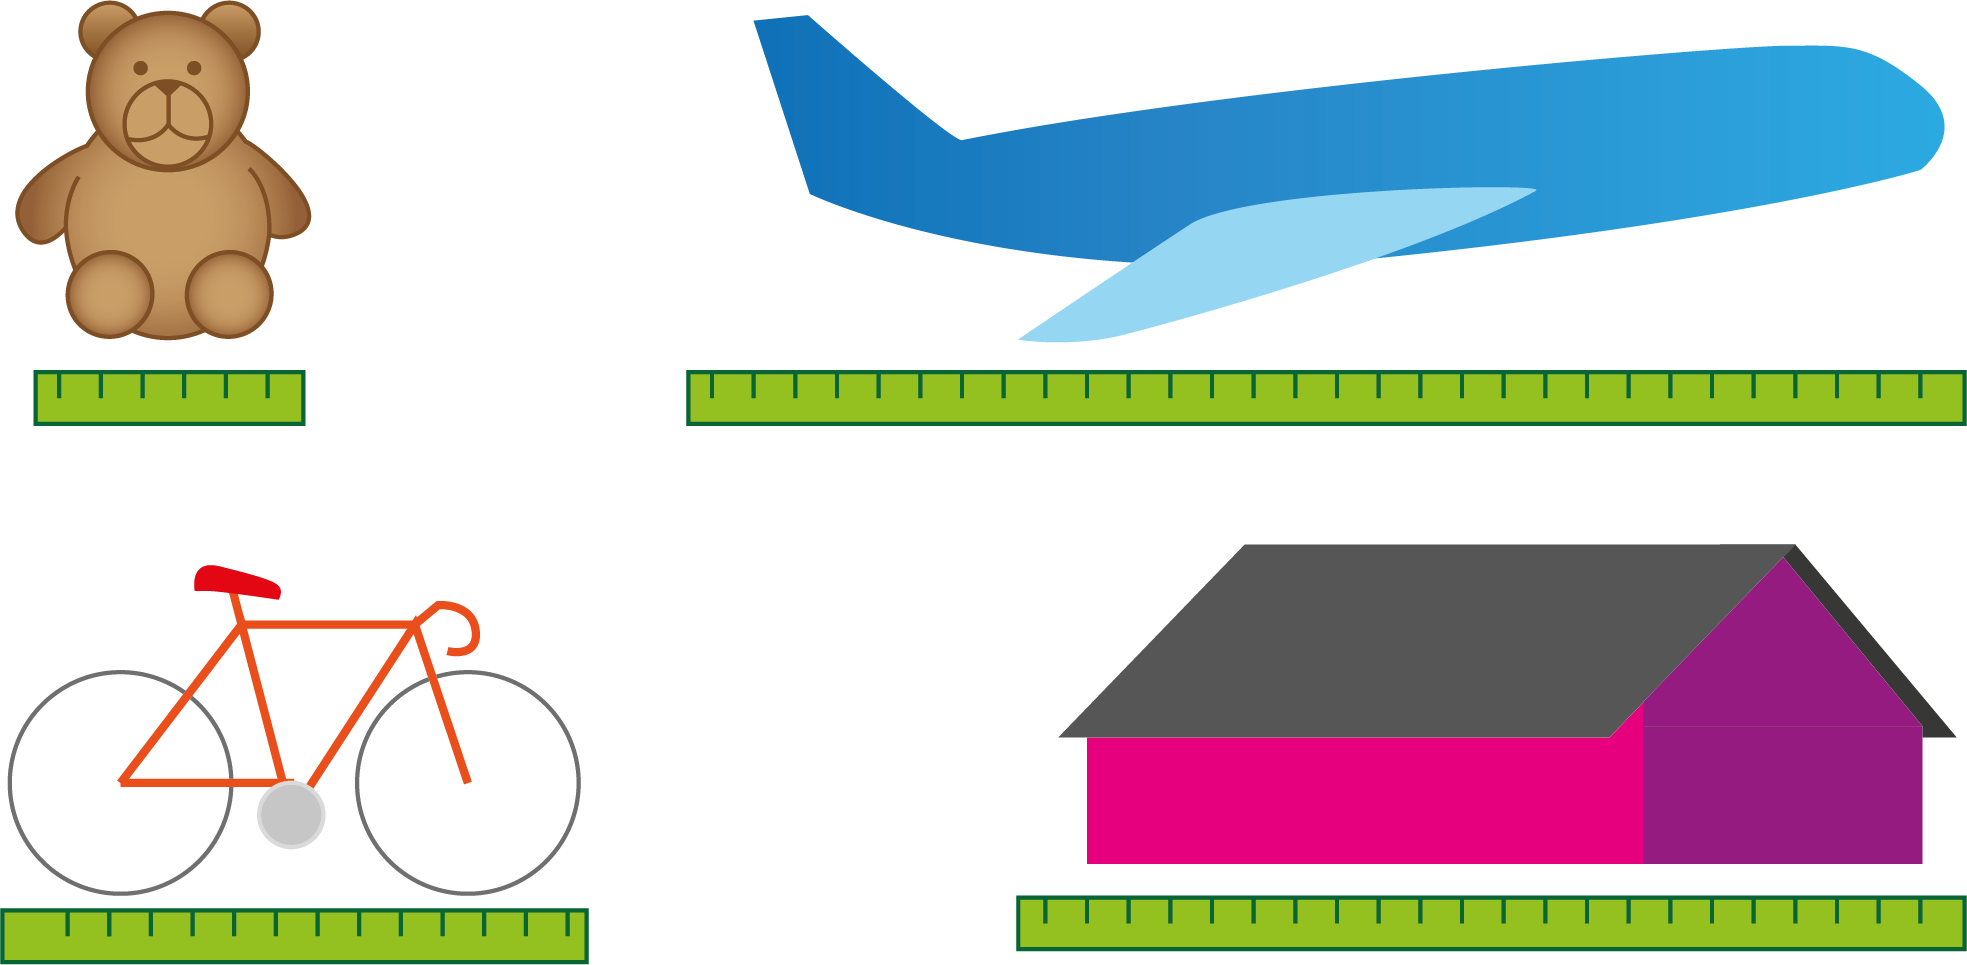 Måling av lengden av en bamse, et fly, en sykkel og et hus